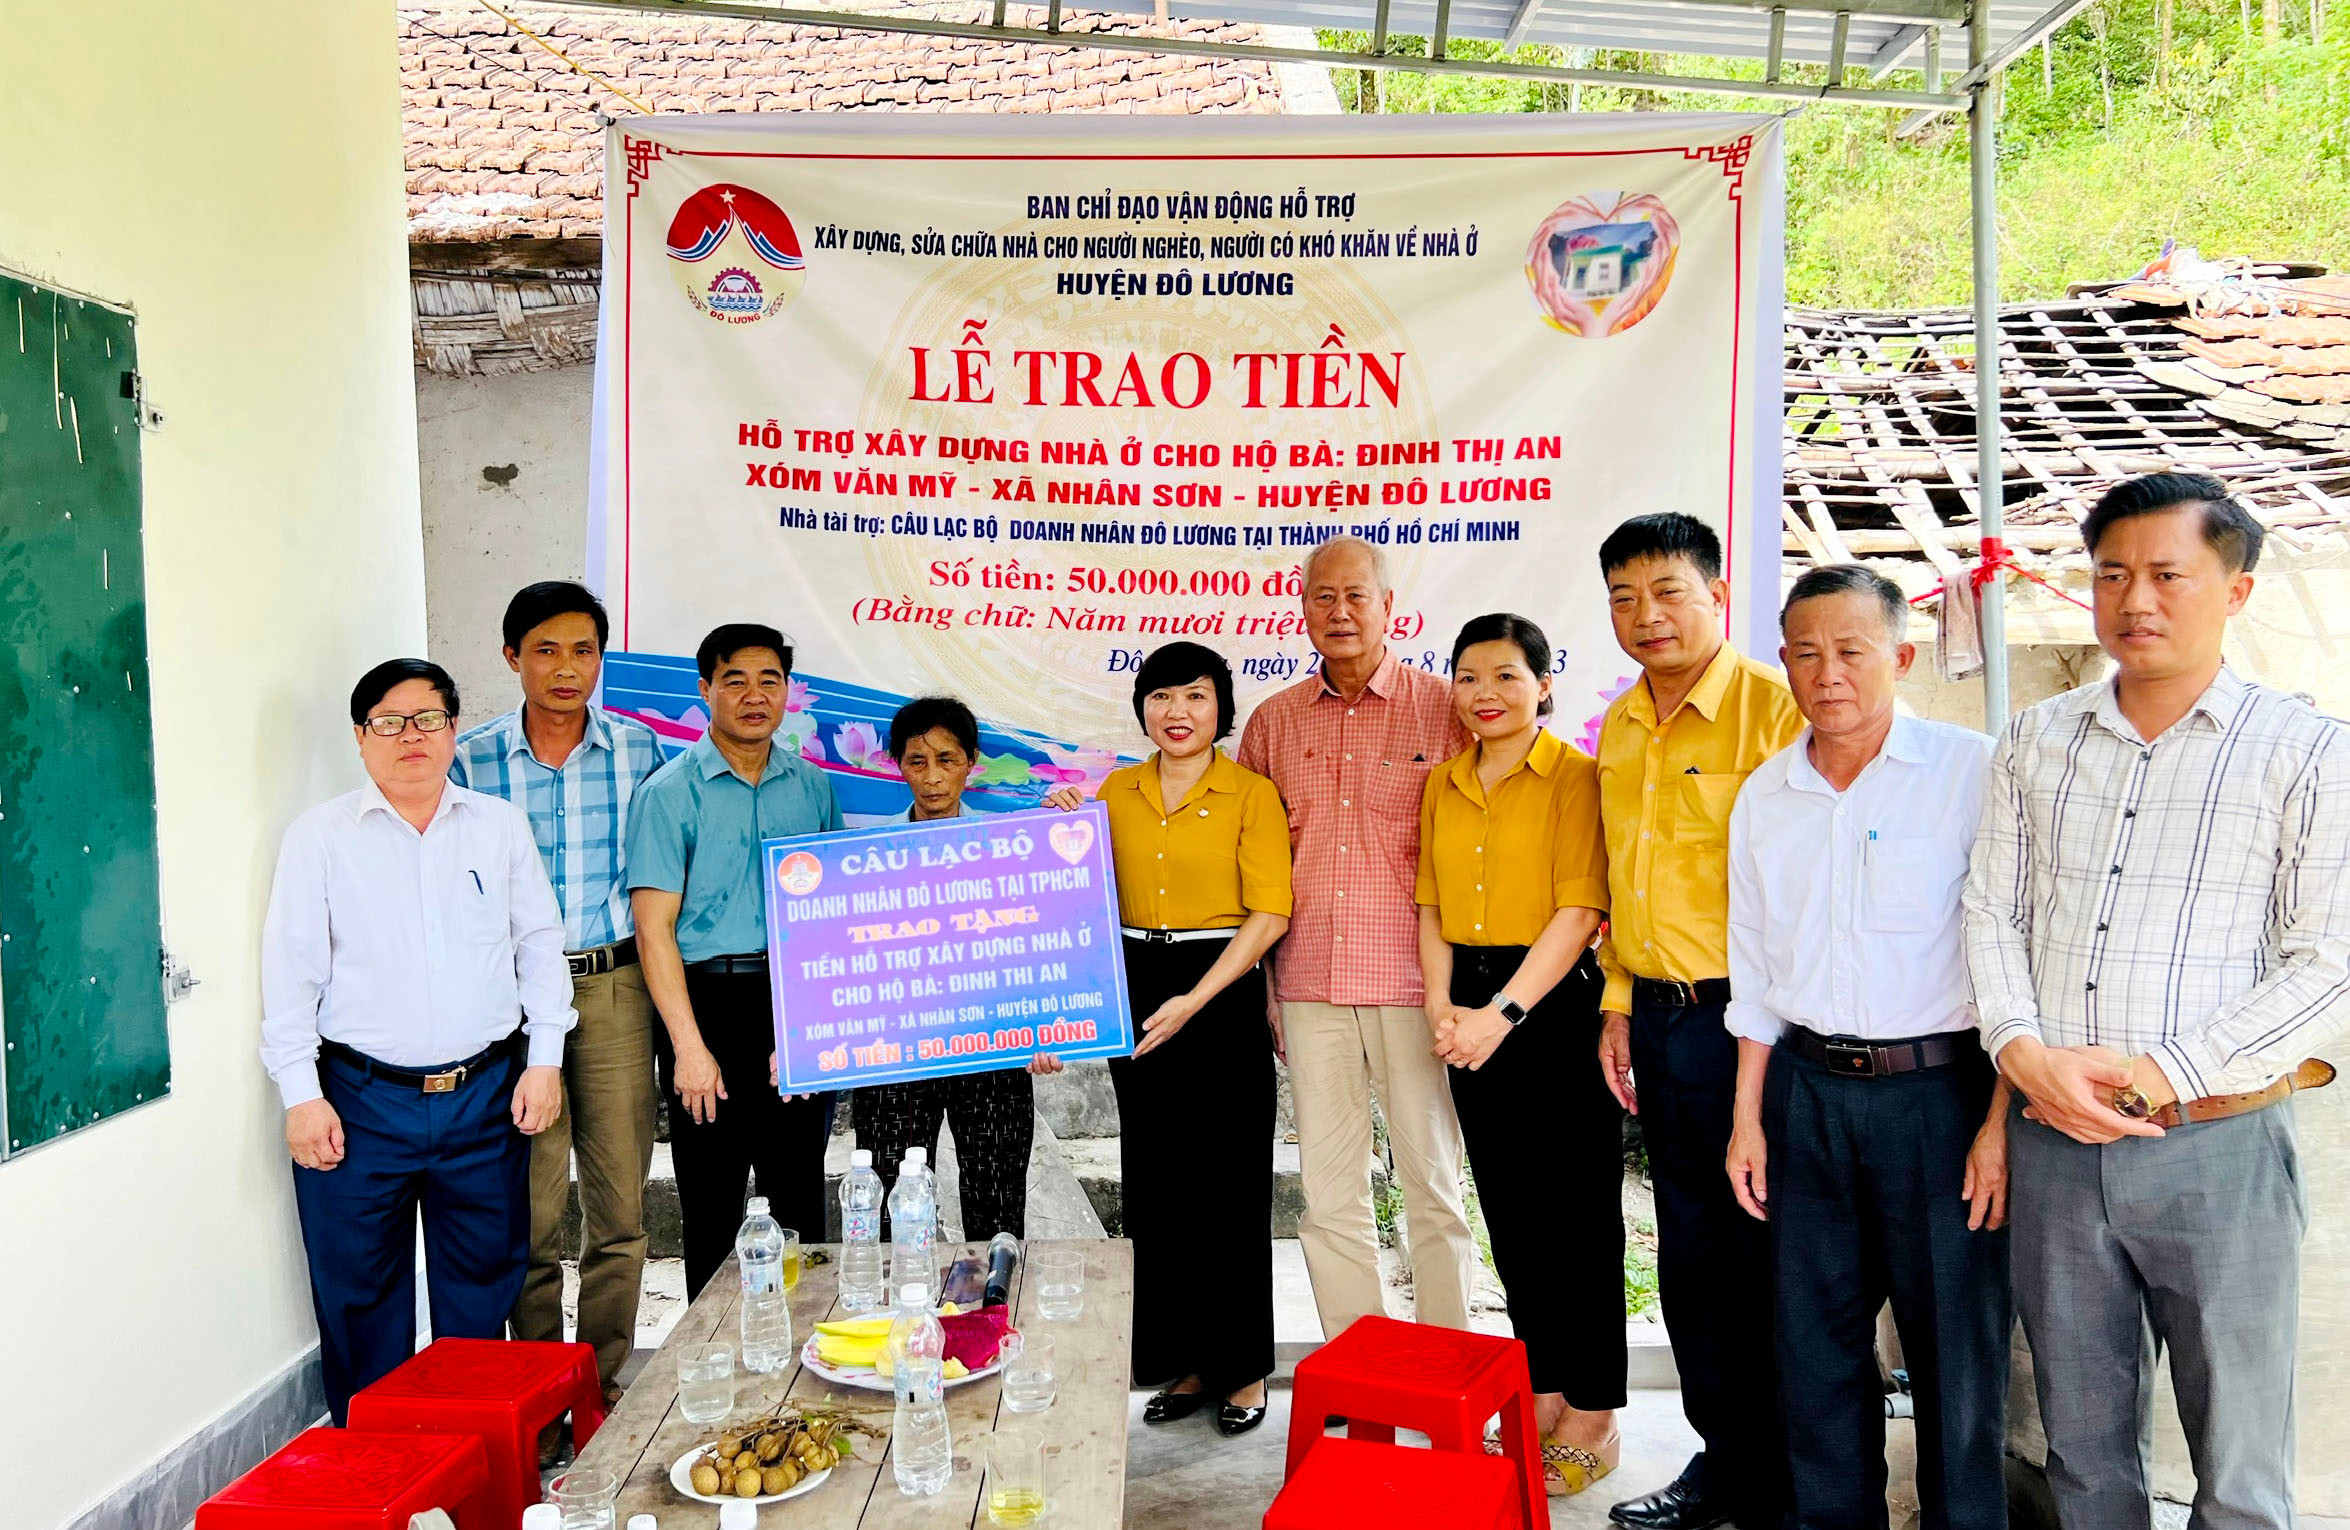 bna_Trao tiền hỗ trợ xây nhà cho gia đình bà Đinh Thị An, xã Nhân Sơn.jpg